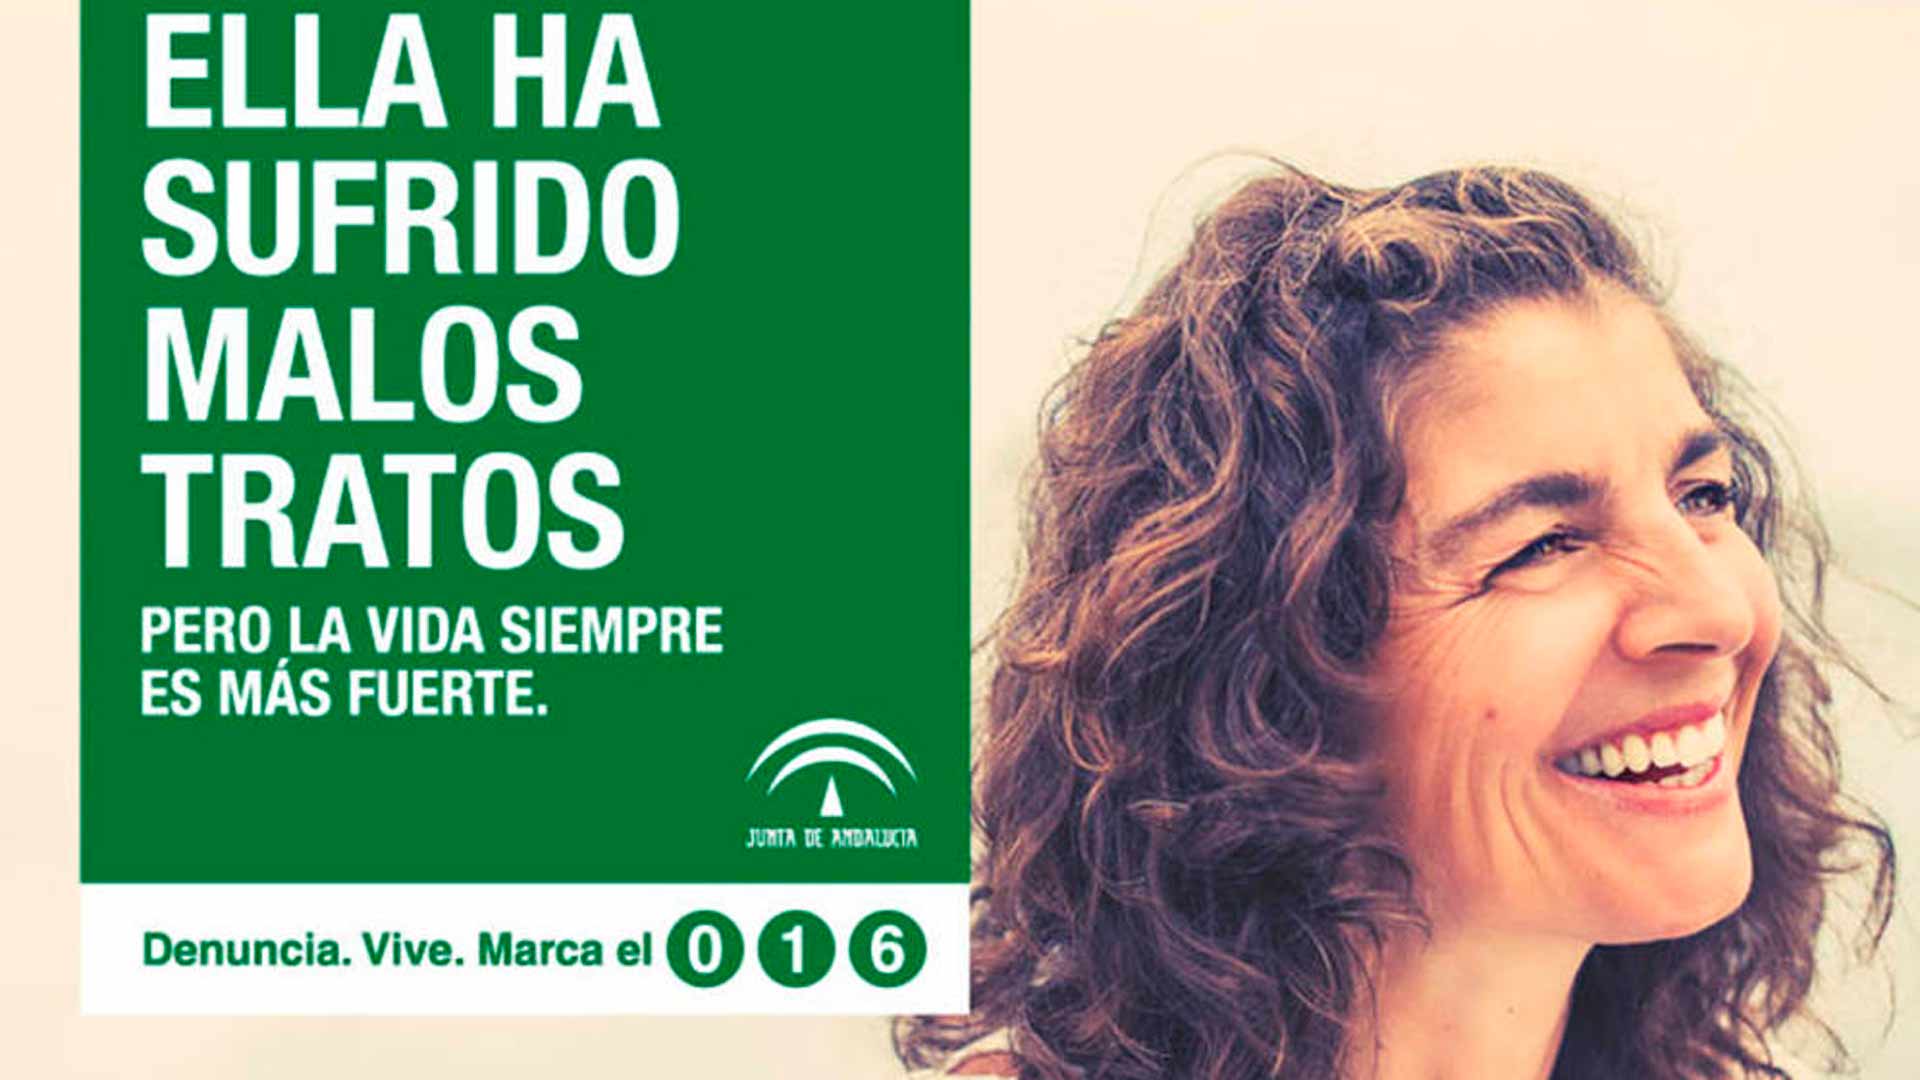 Críticas a la campaña contra la violencia de género en Andalucía por usar modelos en sus carteles